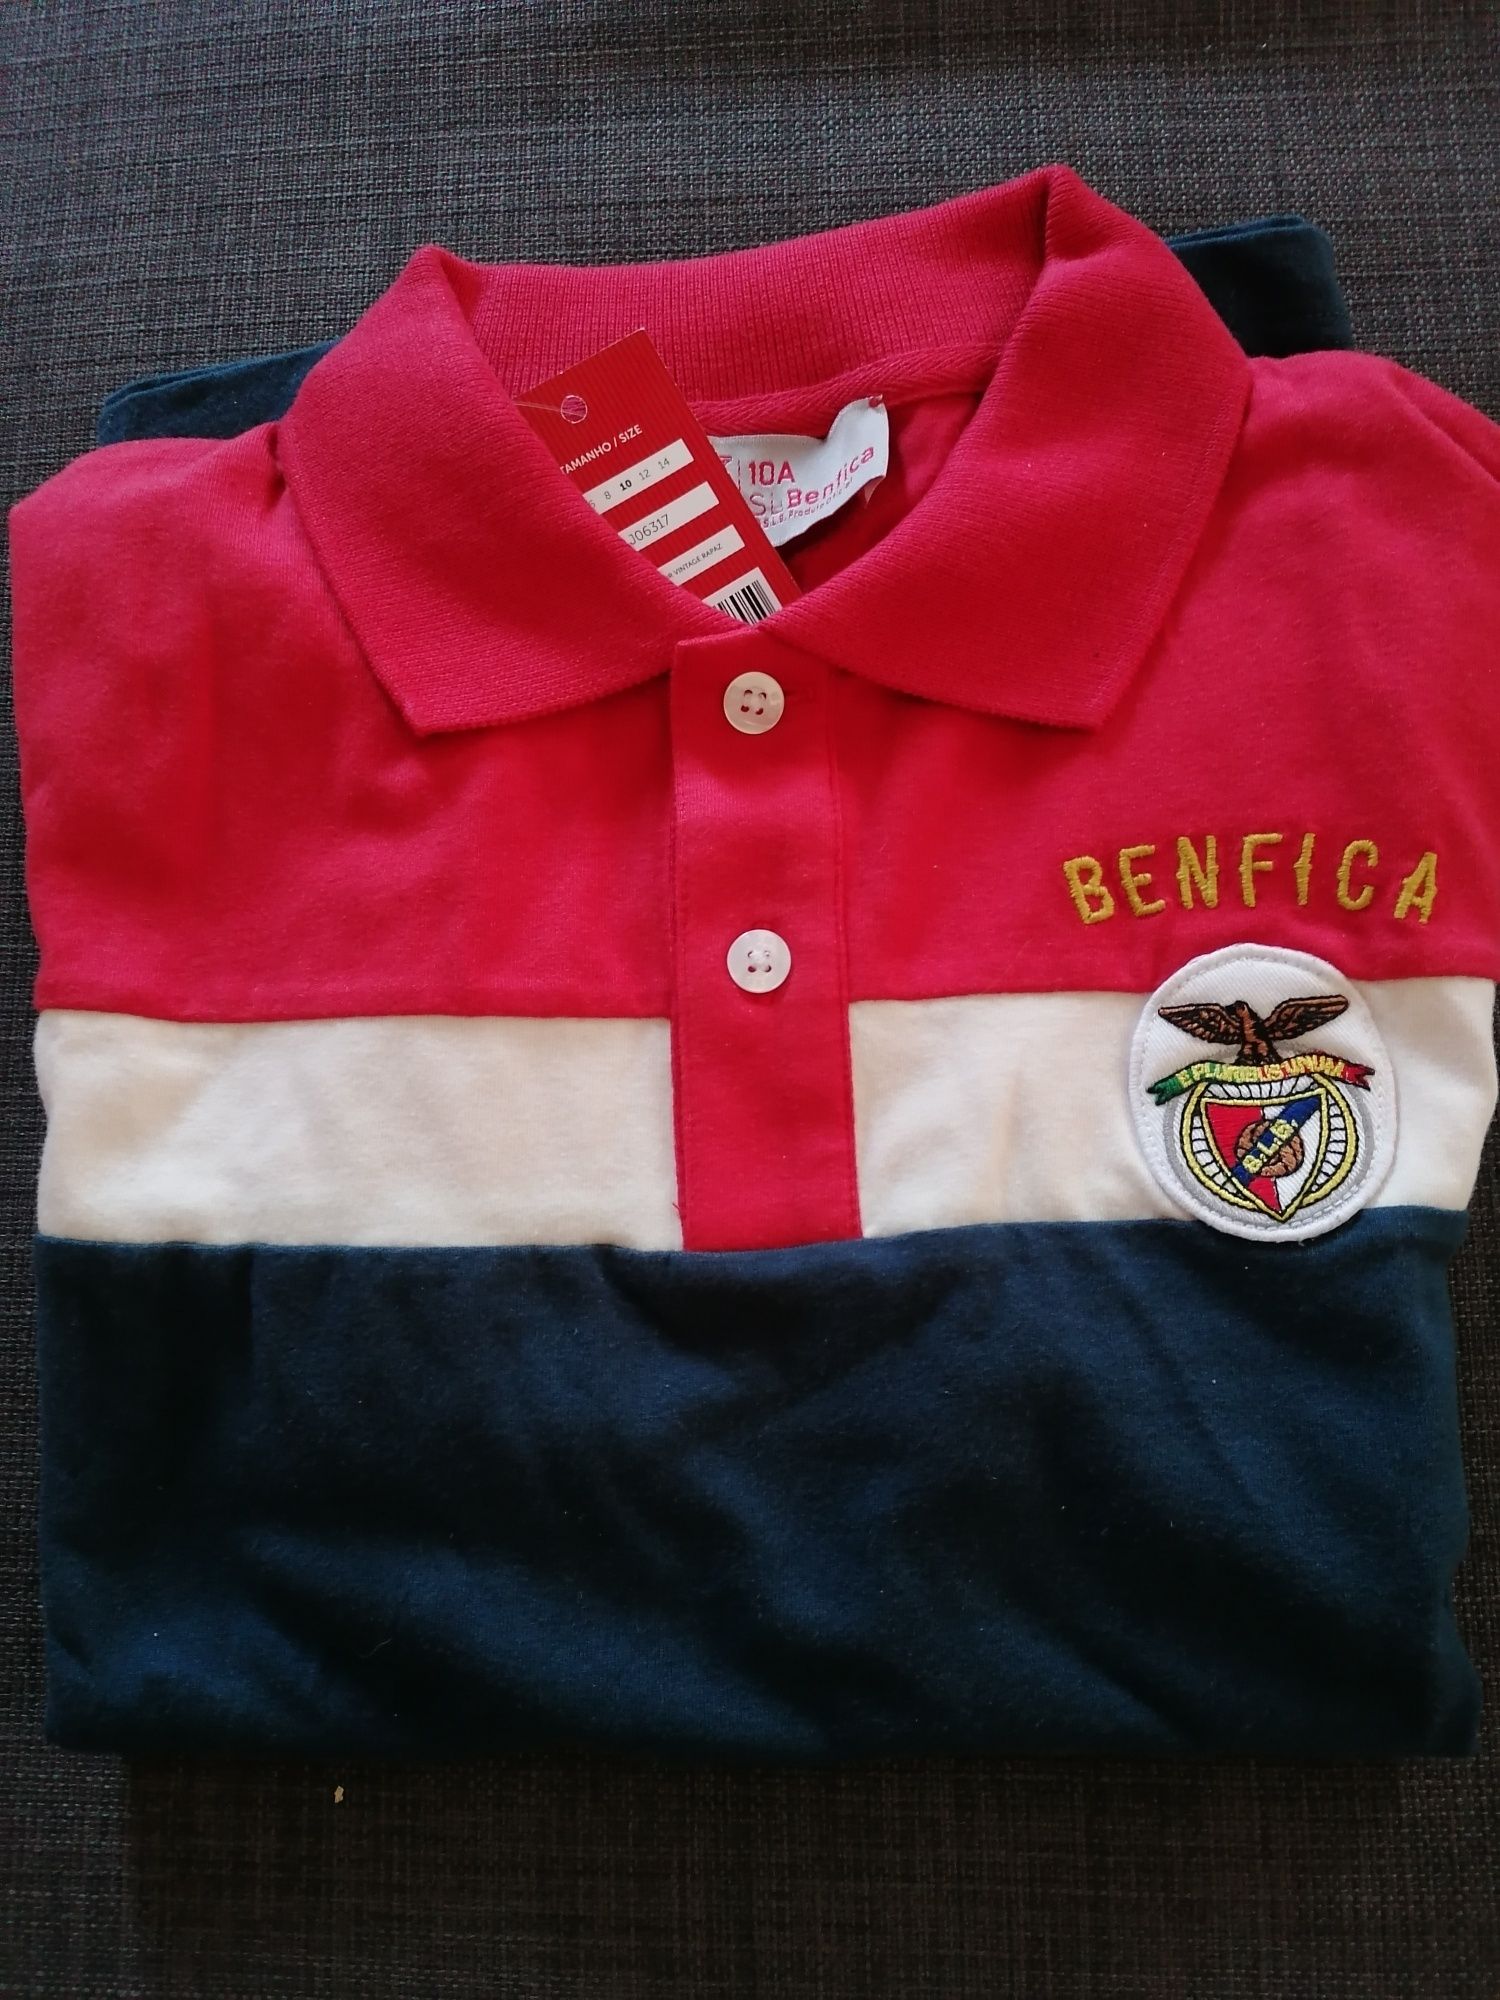 Pólo Benfica 10 anos